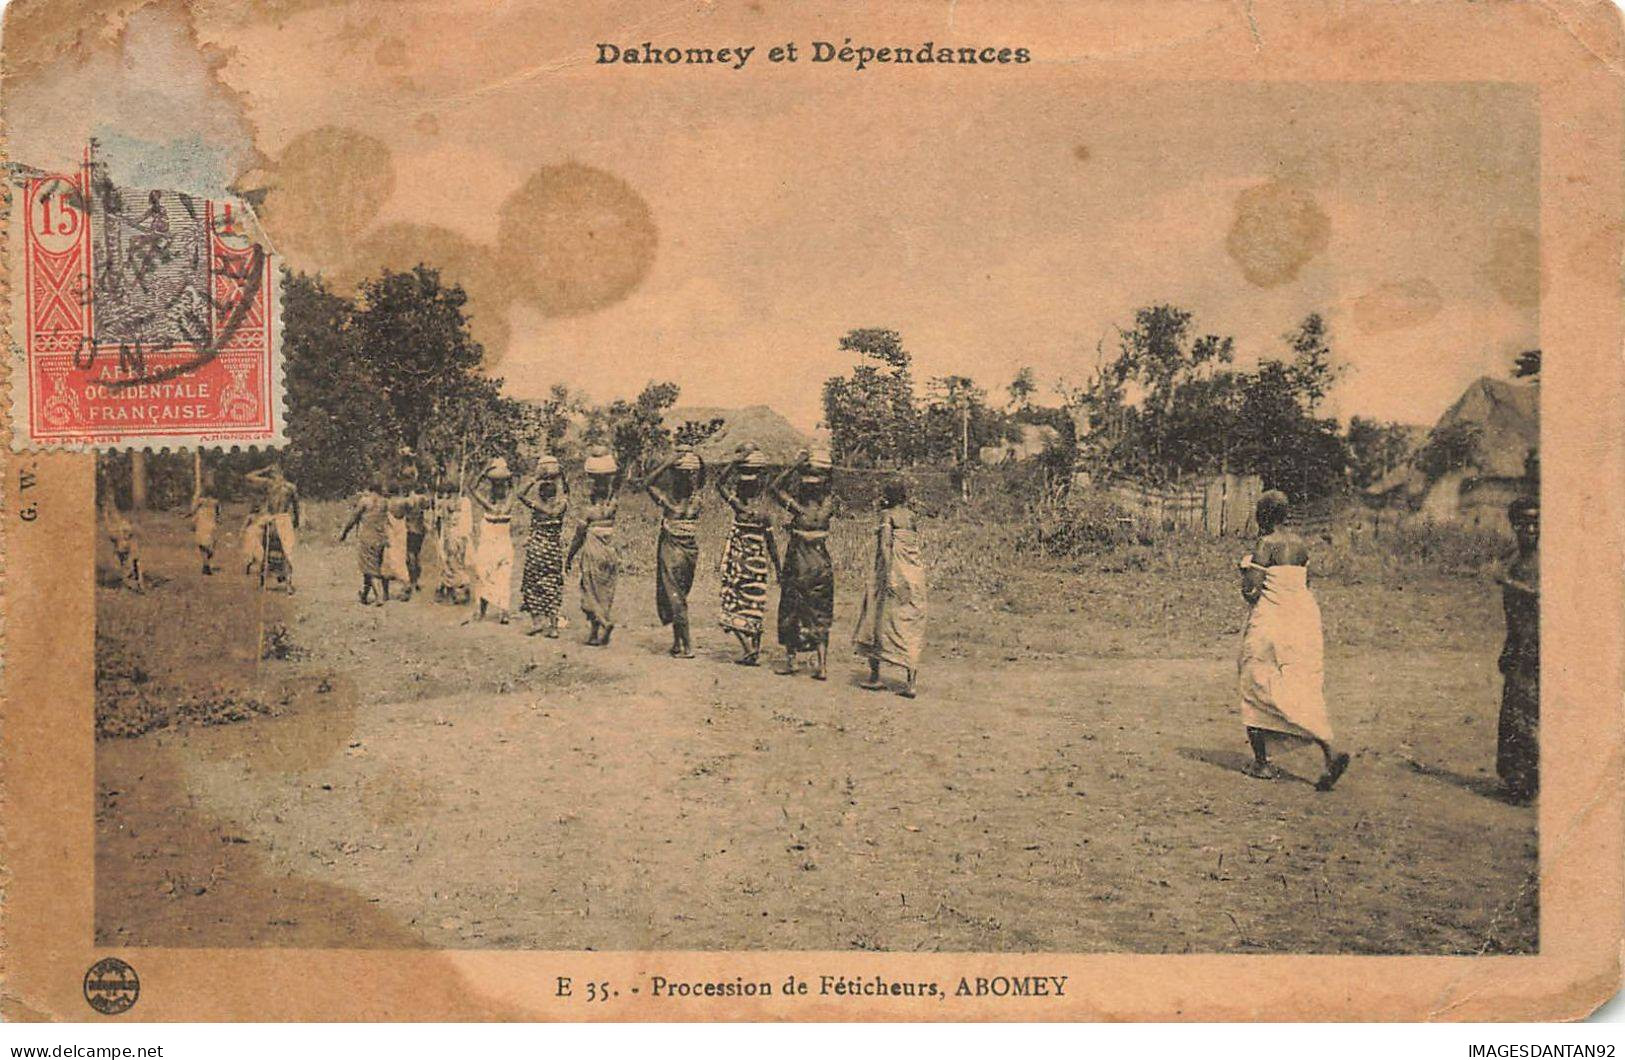 DAHOMEY #27756 PROCESSION DE FETICHEURS AHOMEY - Dahome